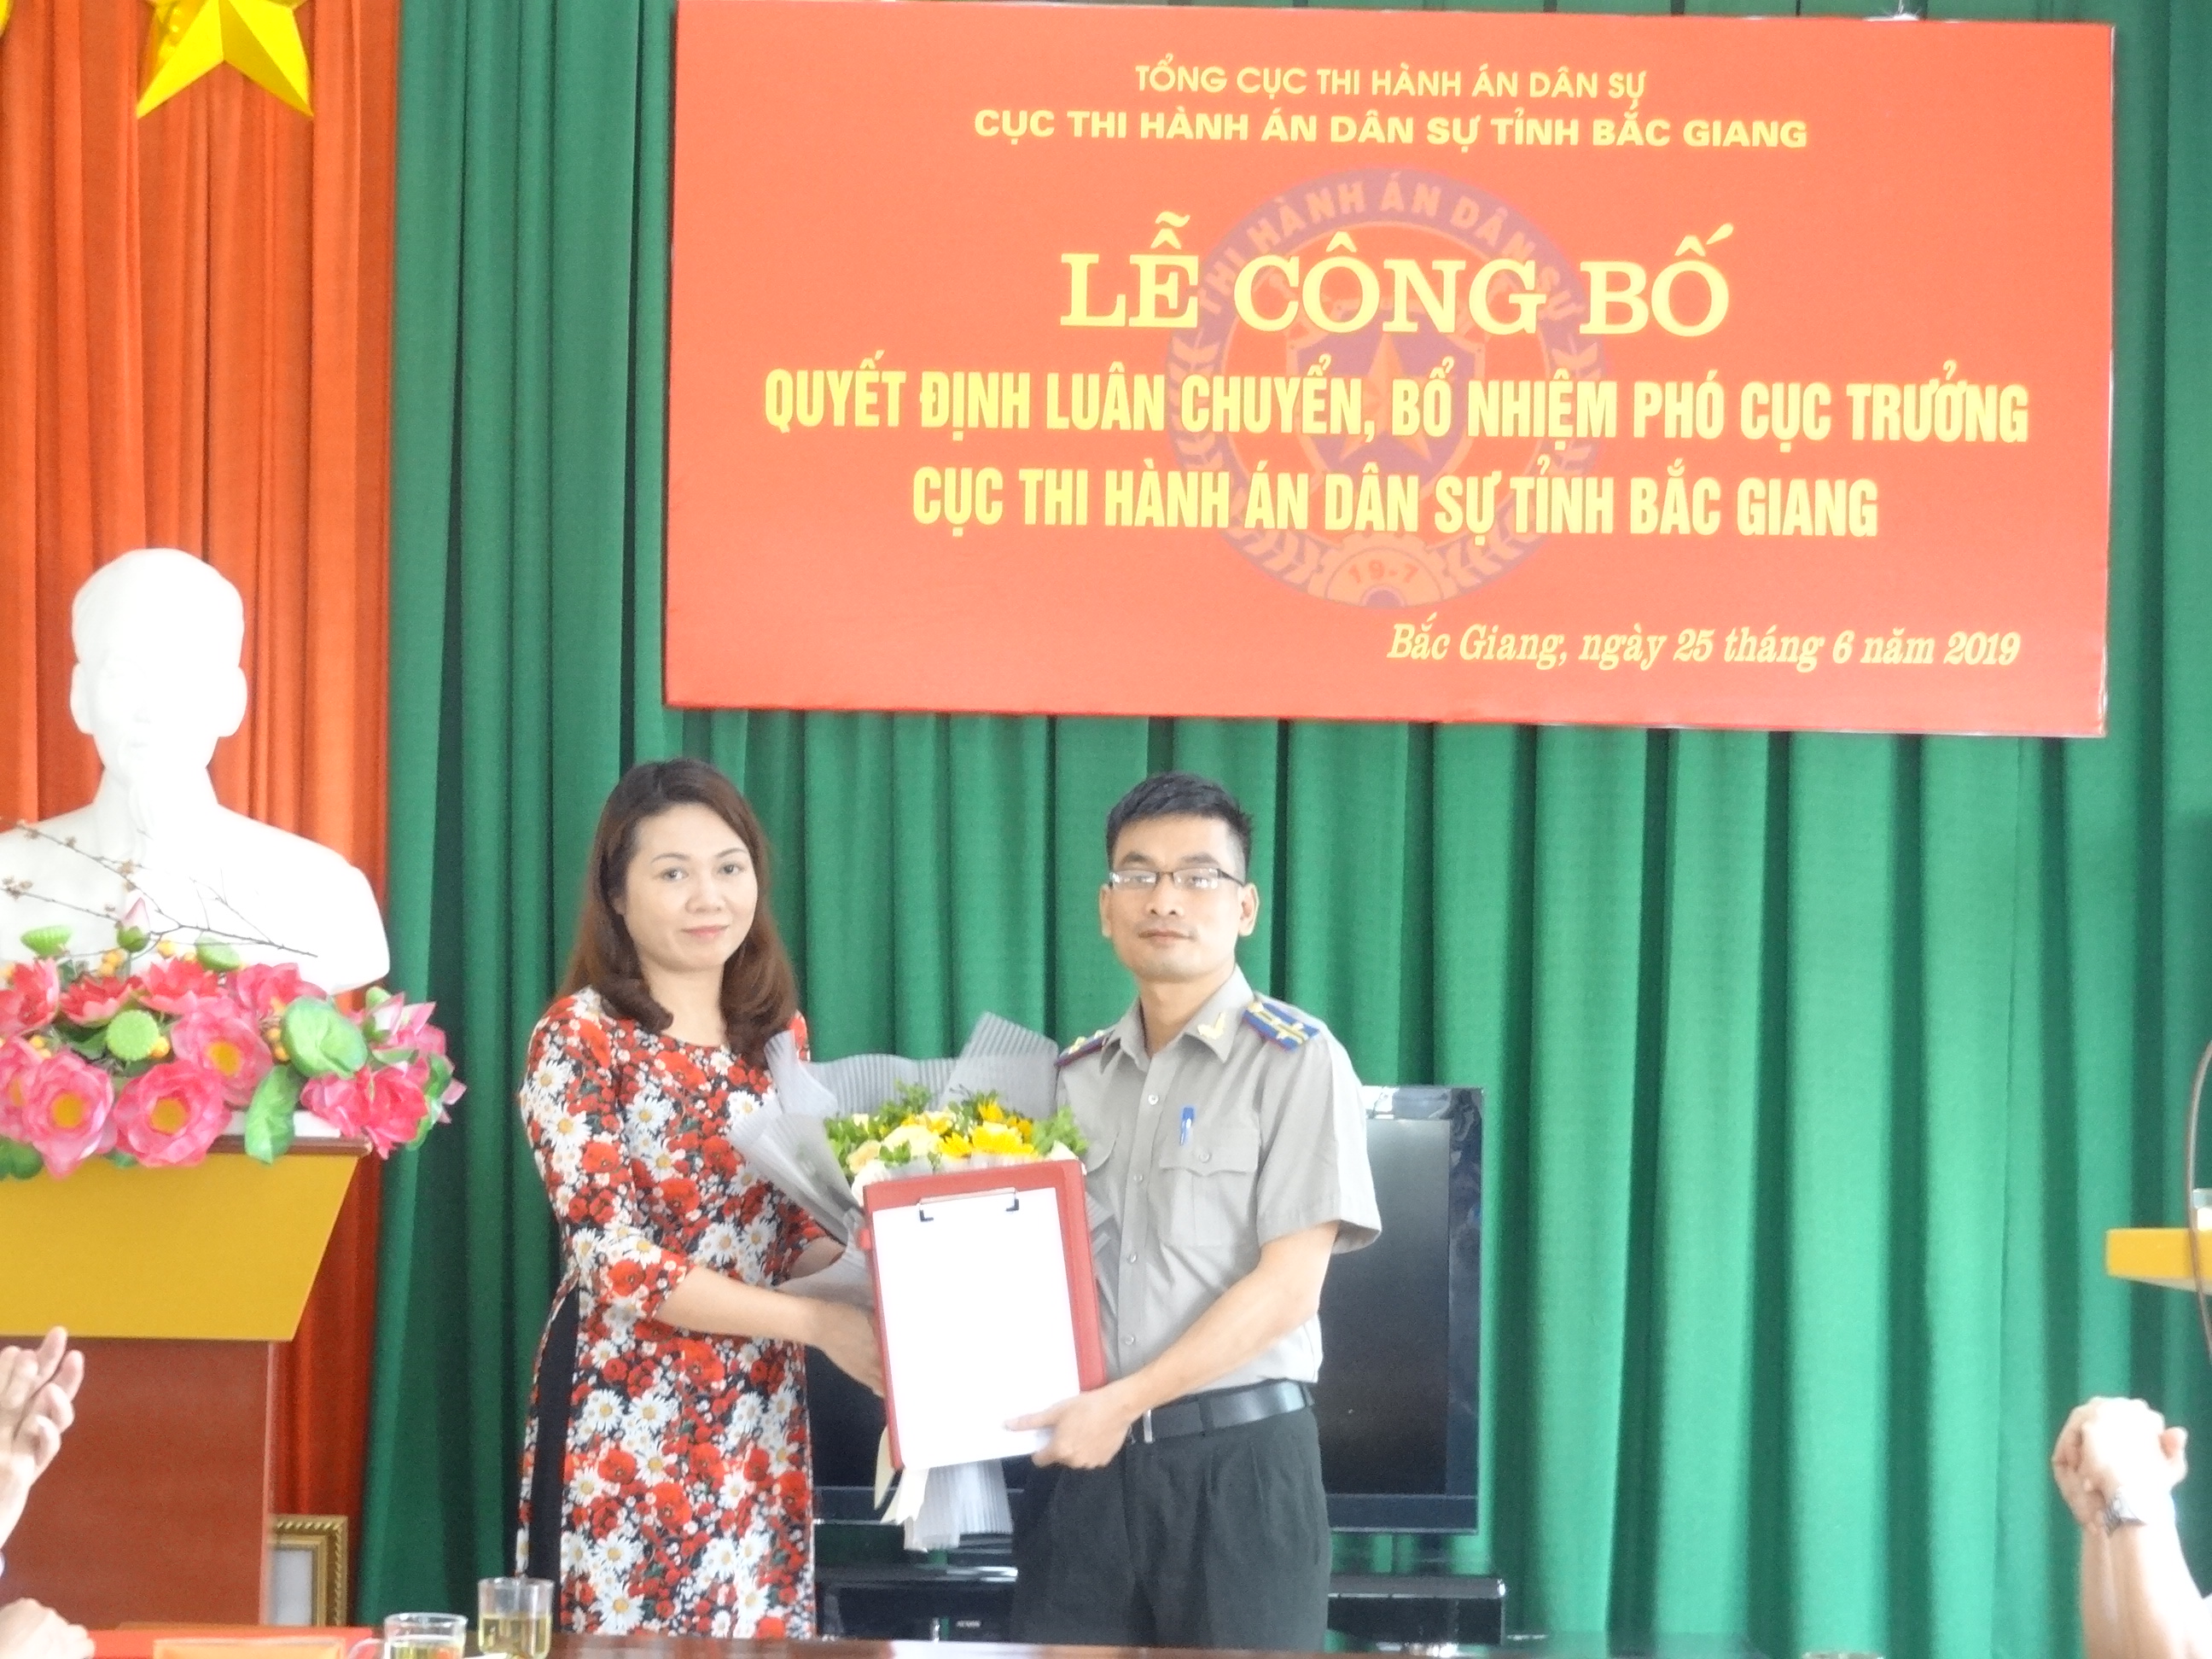 Lễ công bố và trao quyết định bổ nhiệm Phó Cục trưởng Cục Thi hành án dân sự tỉnh Bắc Giang.